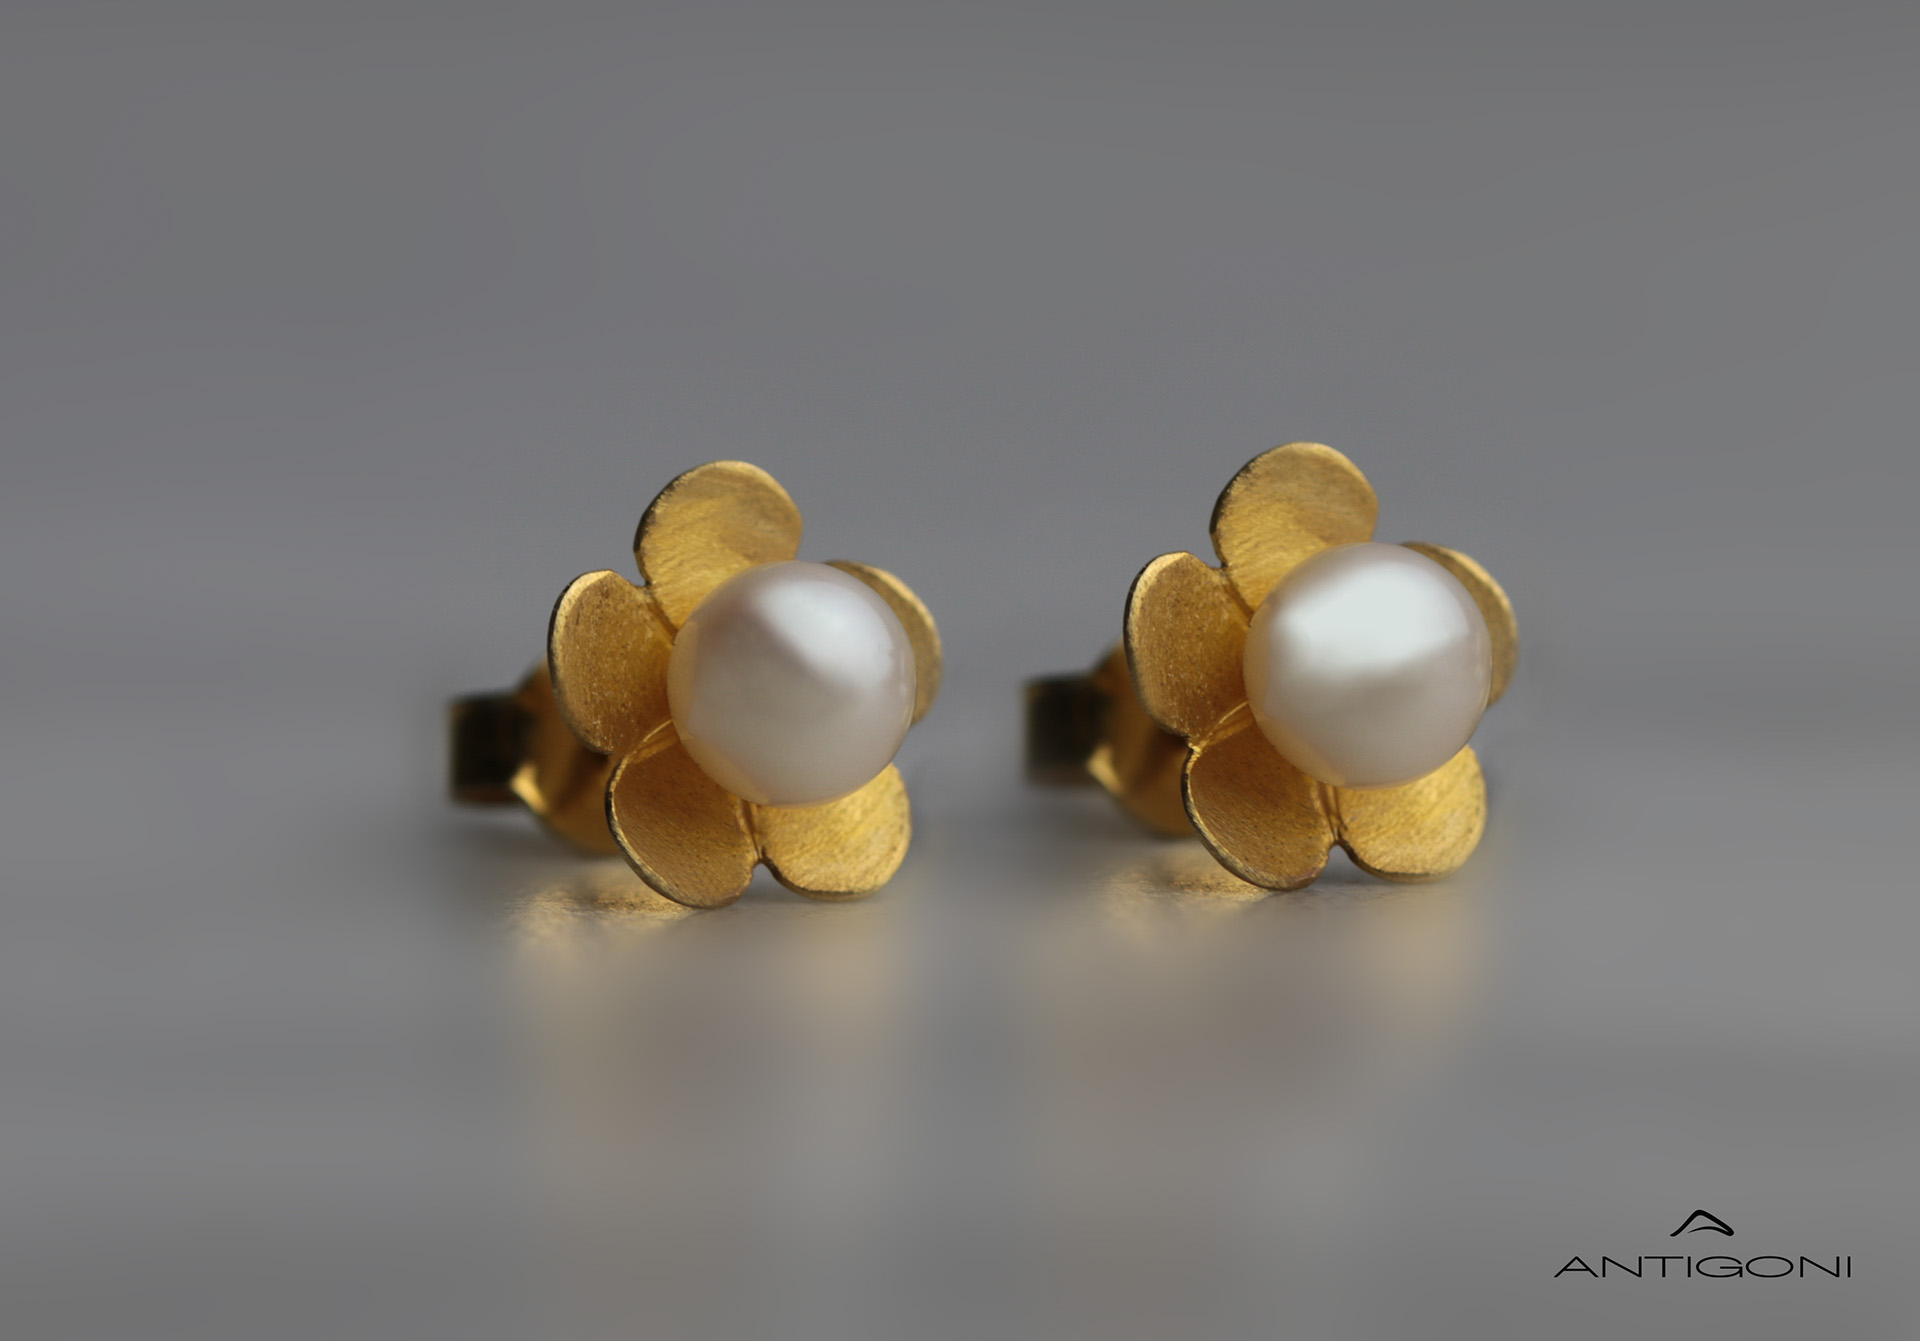 Flowery earrings with pearls